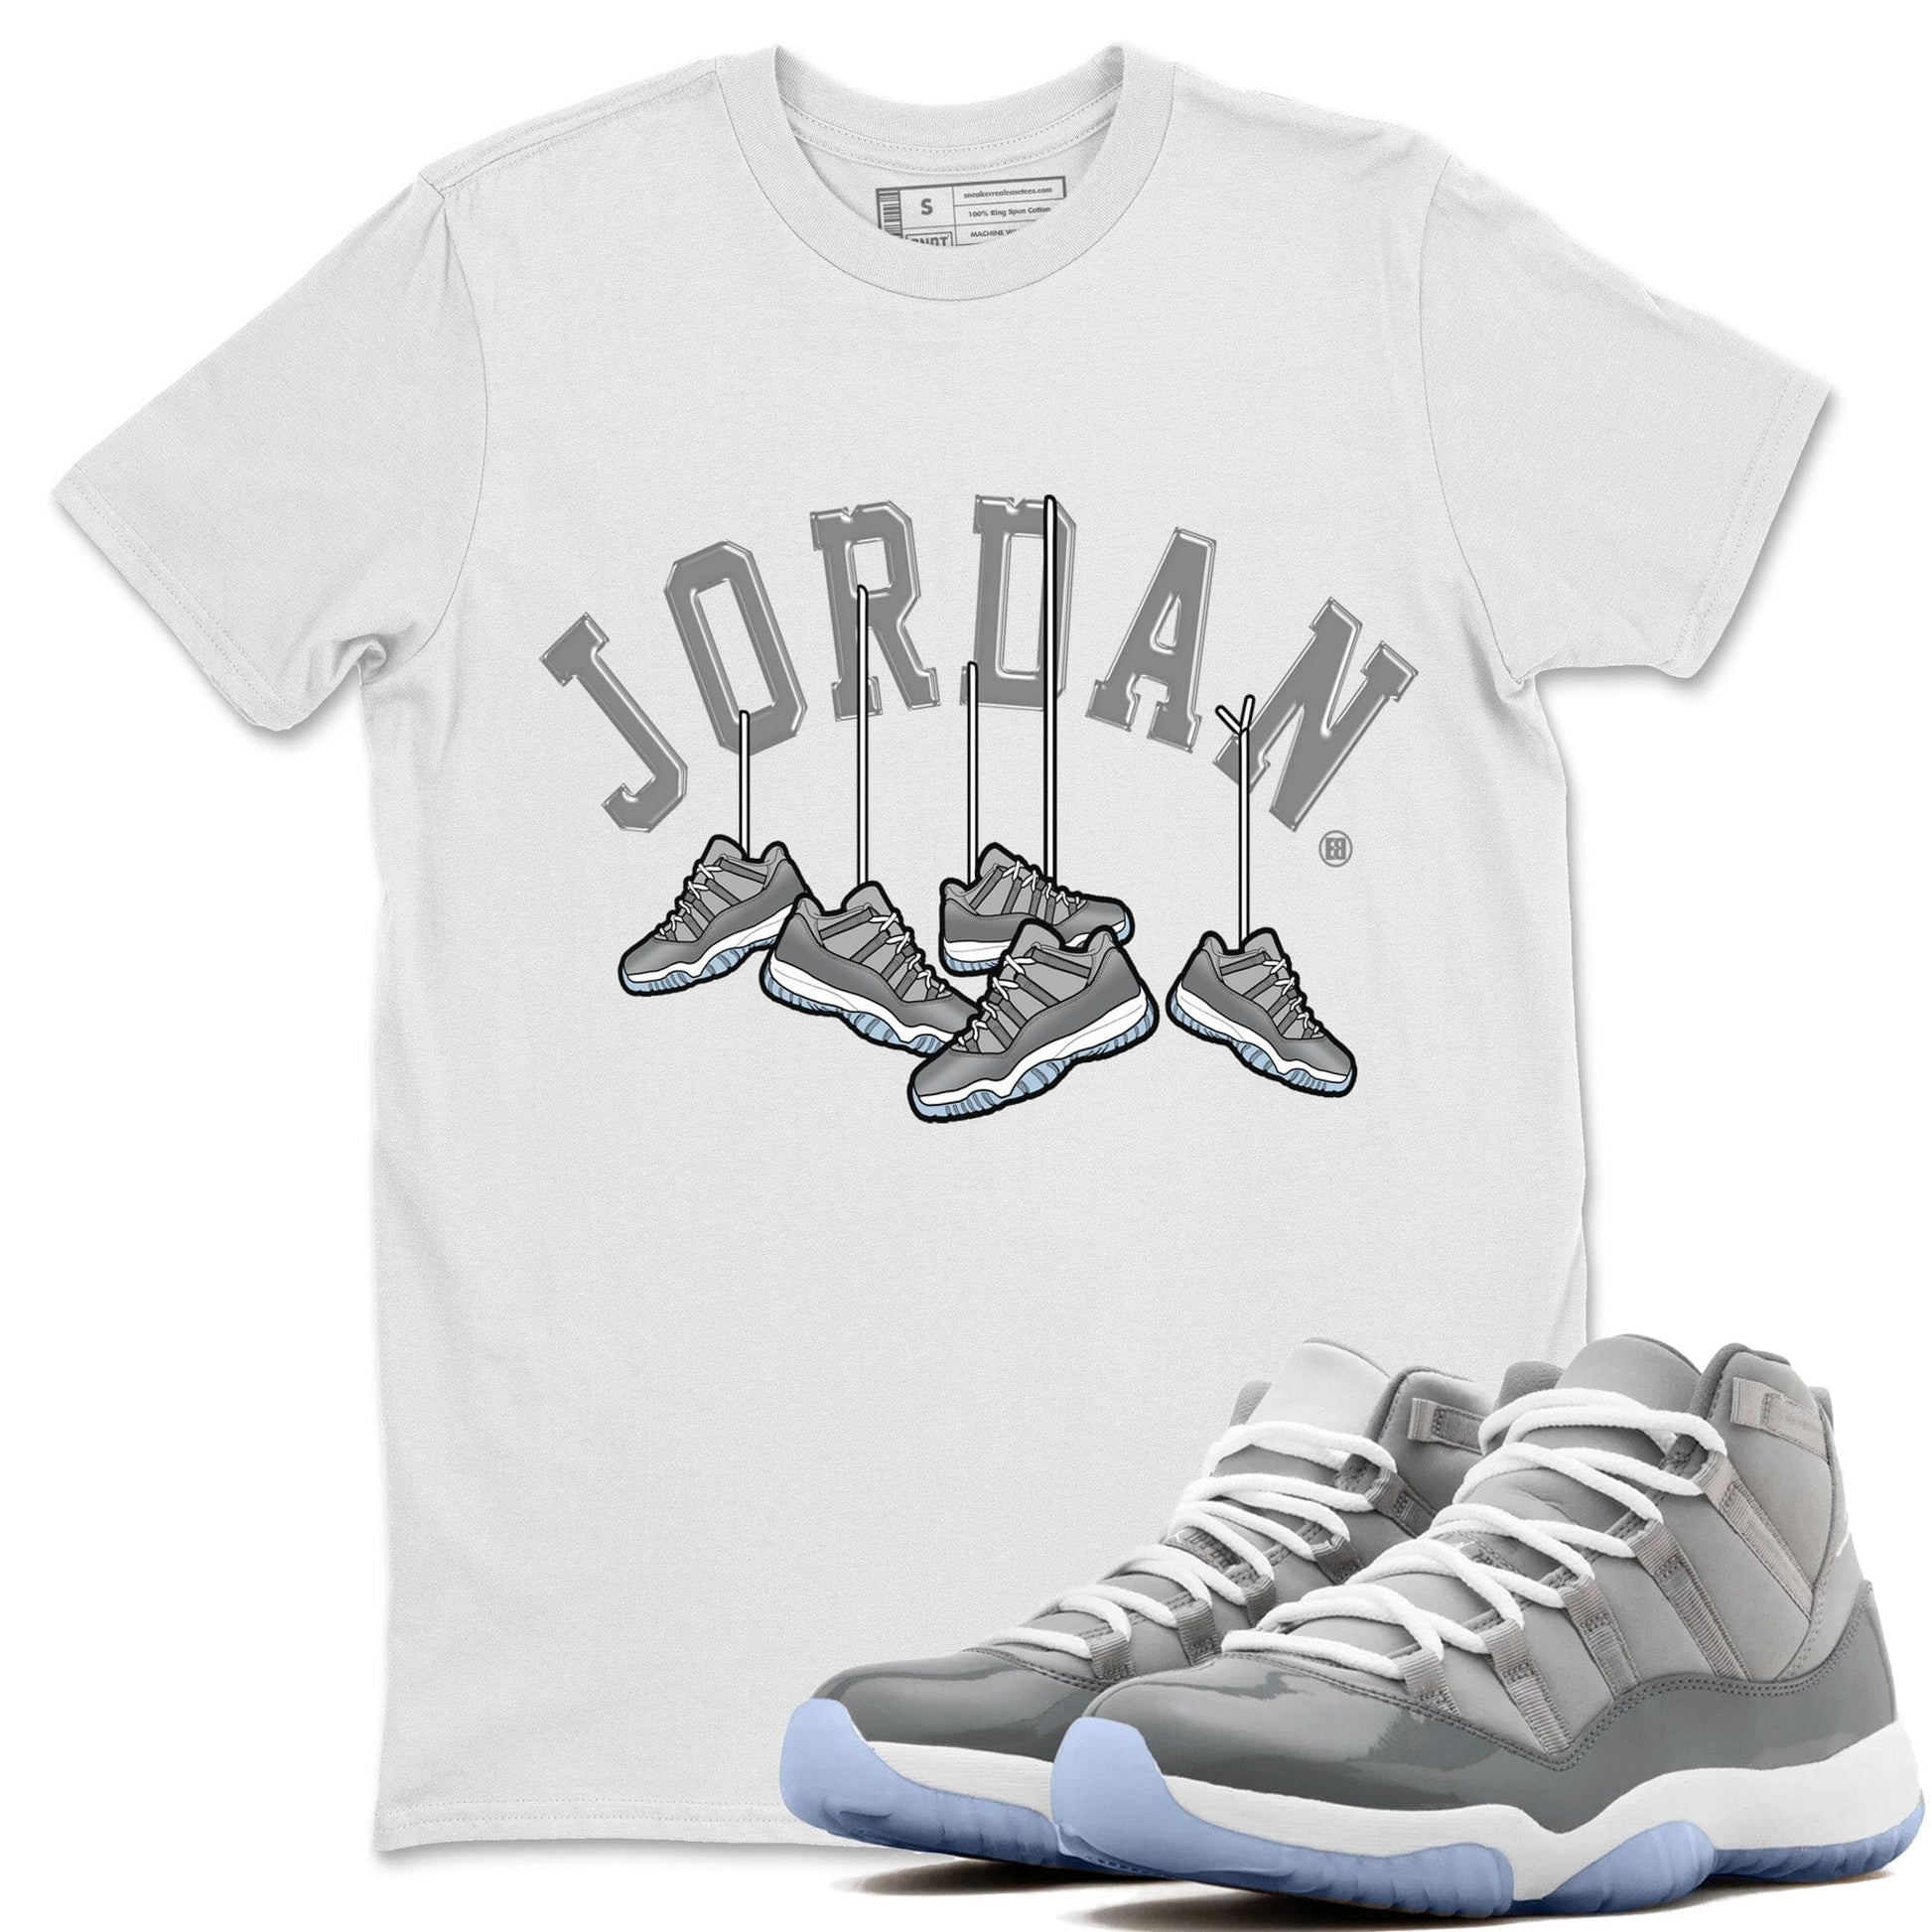 Jordan 11 Cool Grey Sneaker Match Tees Hanging Sneakers Sneaker Tees Jordan 11 Cool Grey Sneaker Release Tees Unisex Shirts